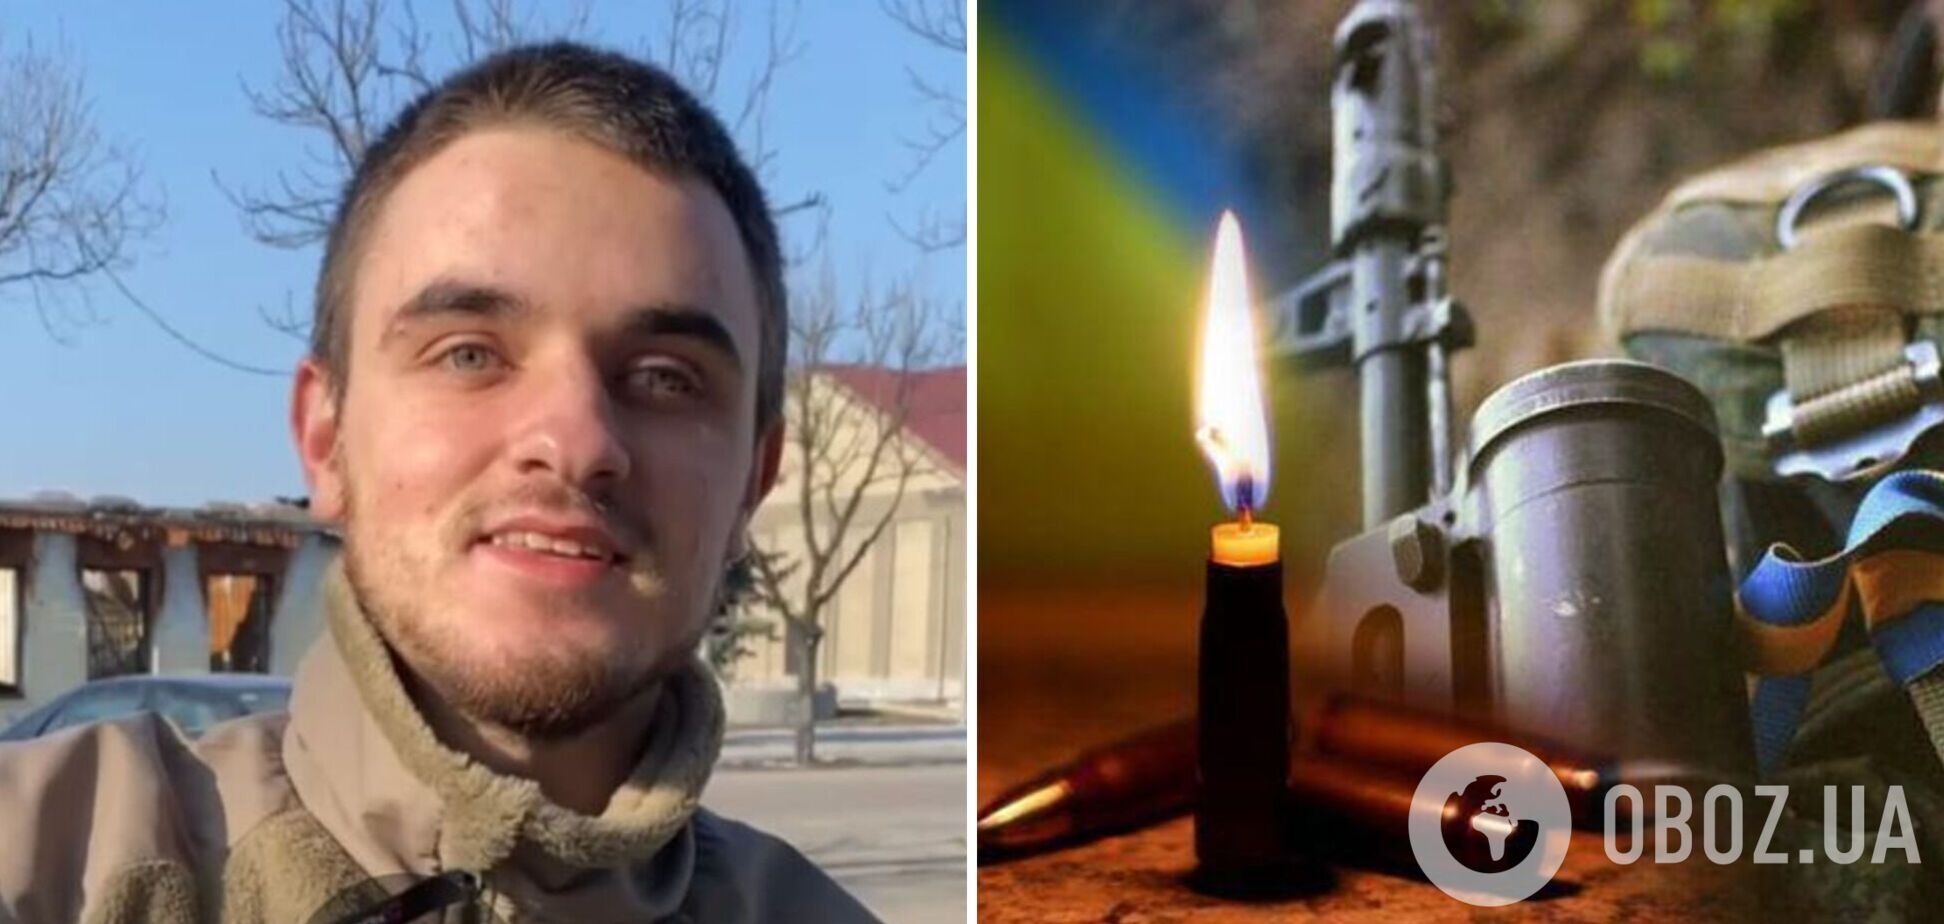  Хлопцю було лише 22 роки: на фронті загинув кінооператор Олесь Самчук. Фото